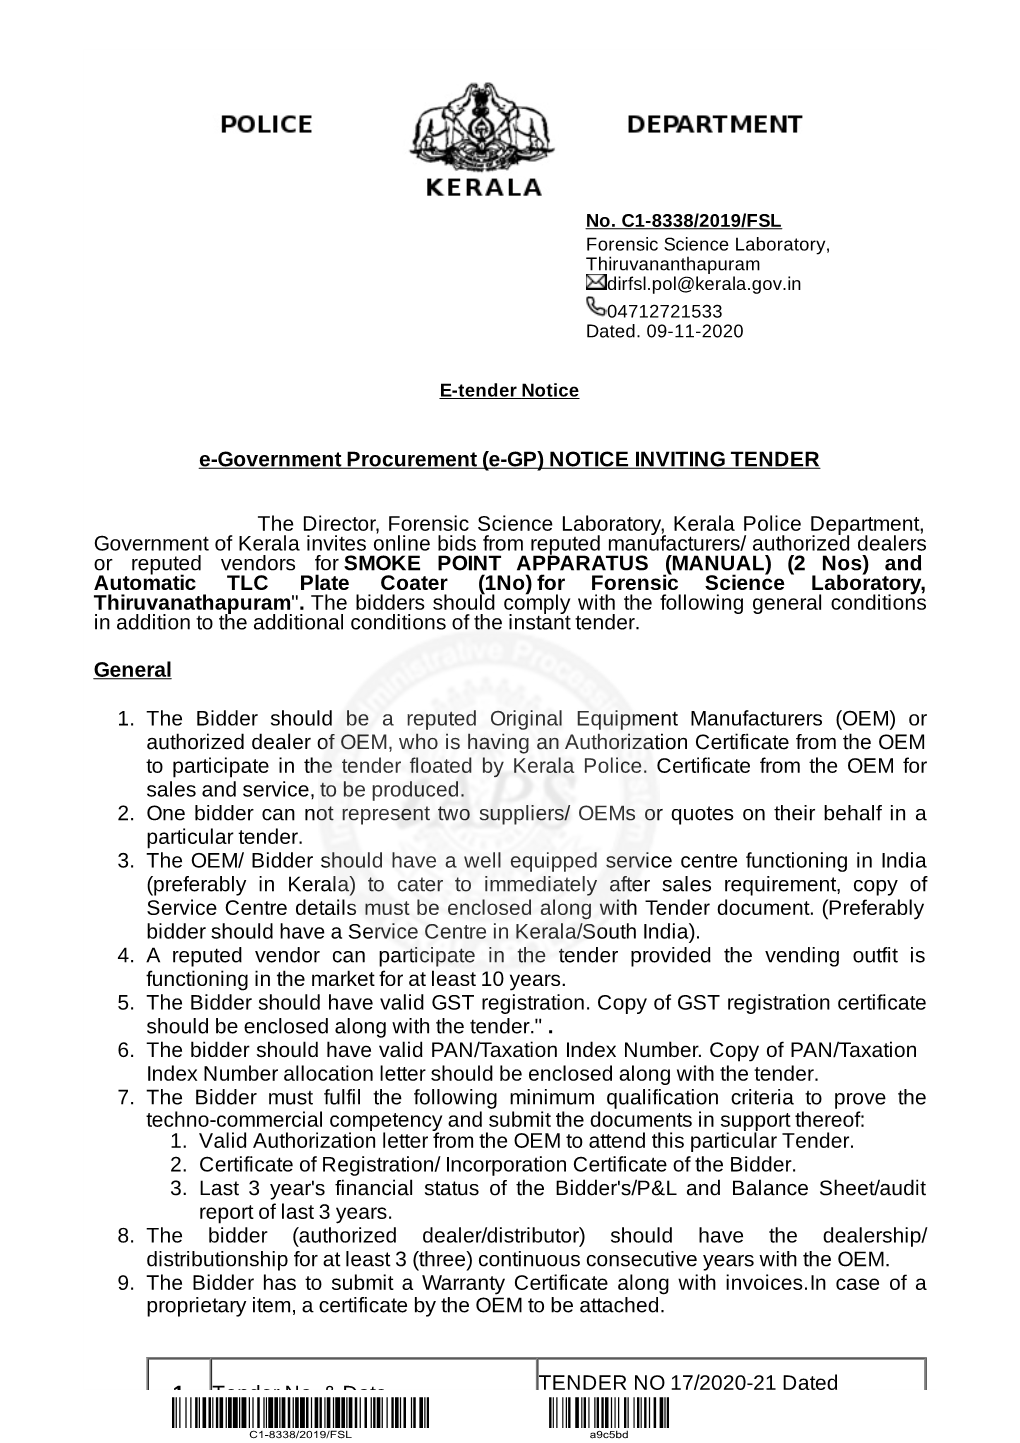 E-Government Procurement (E-GP) NOTICE INVITING TENDER